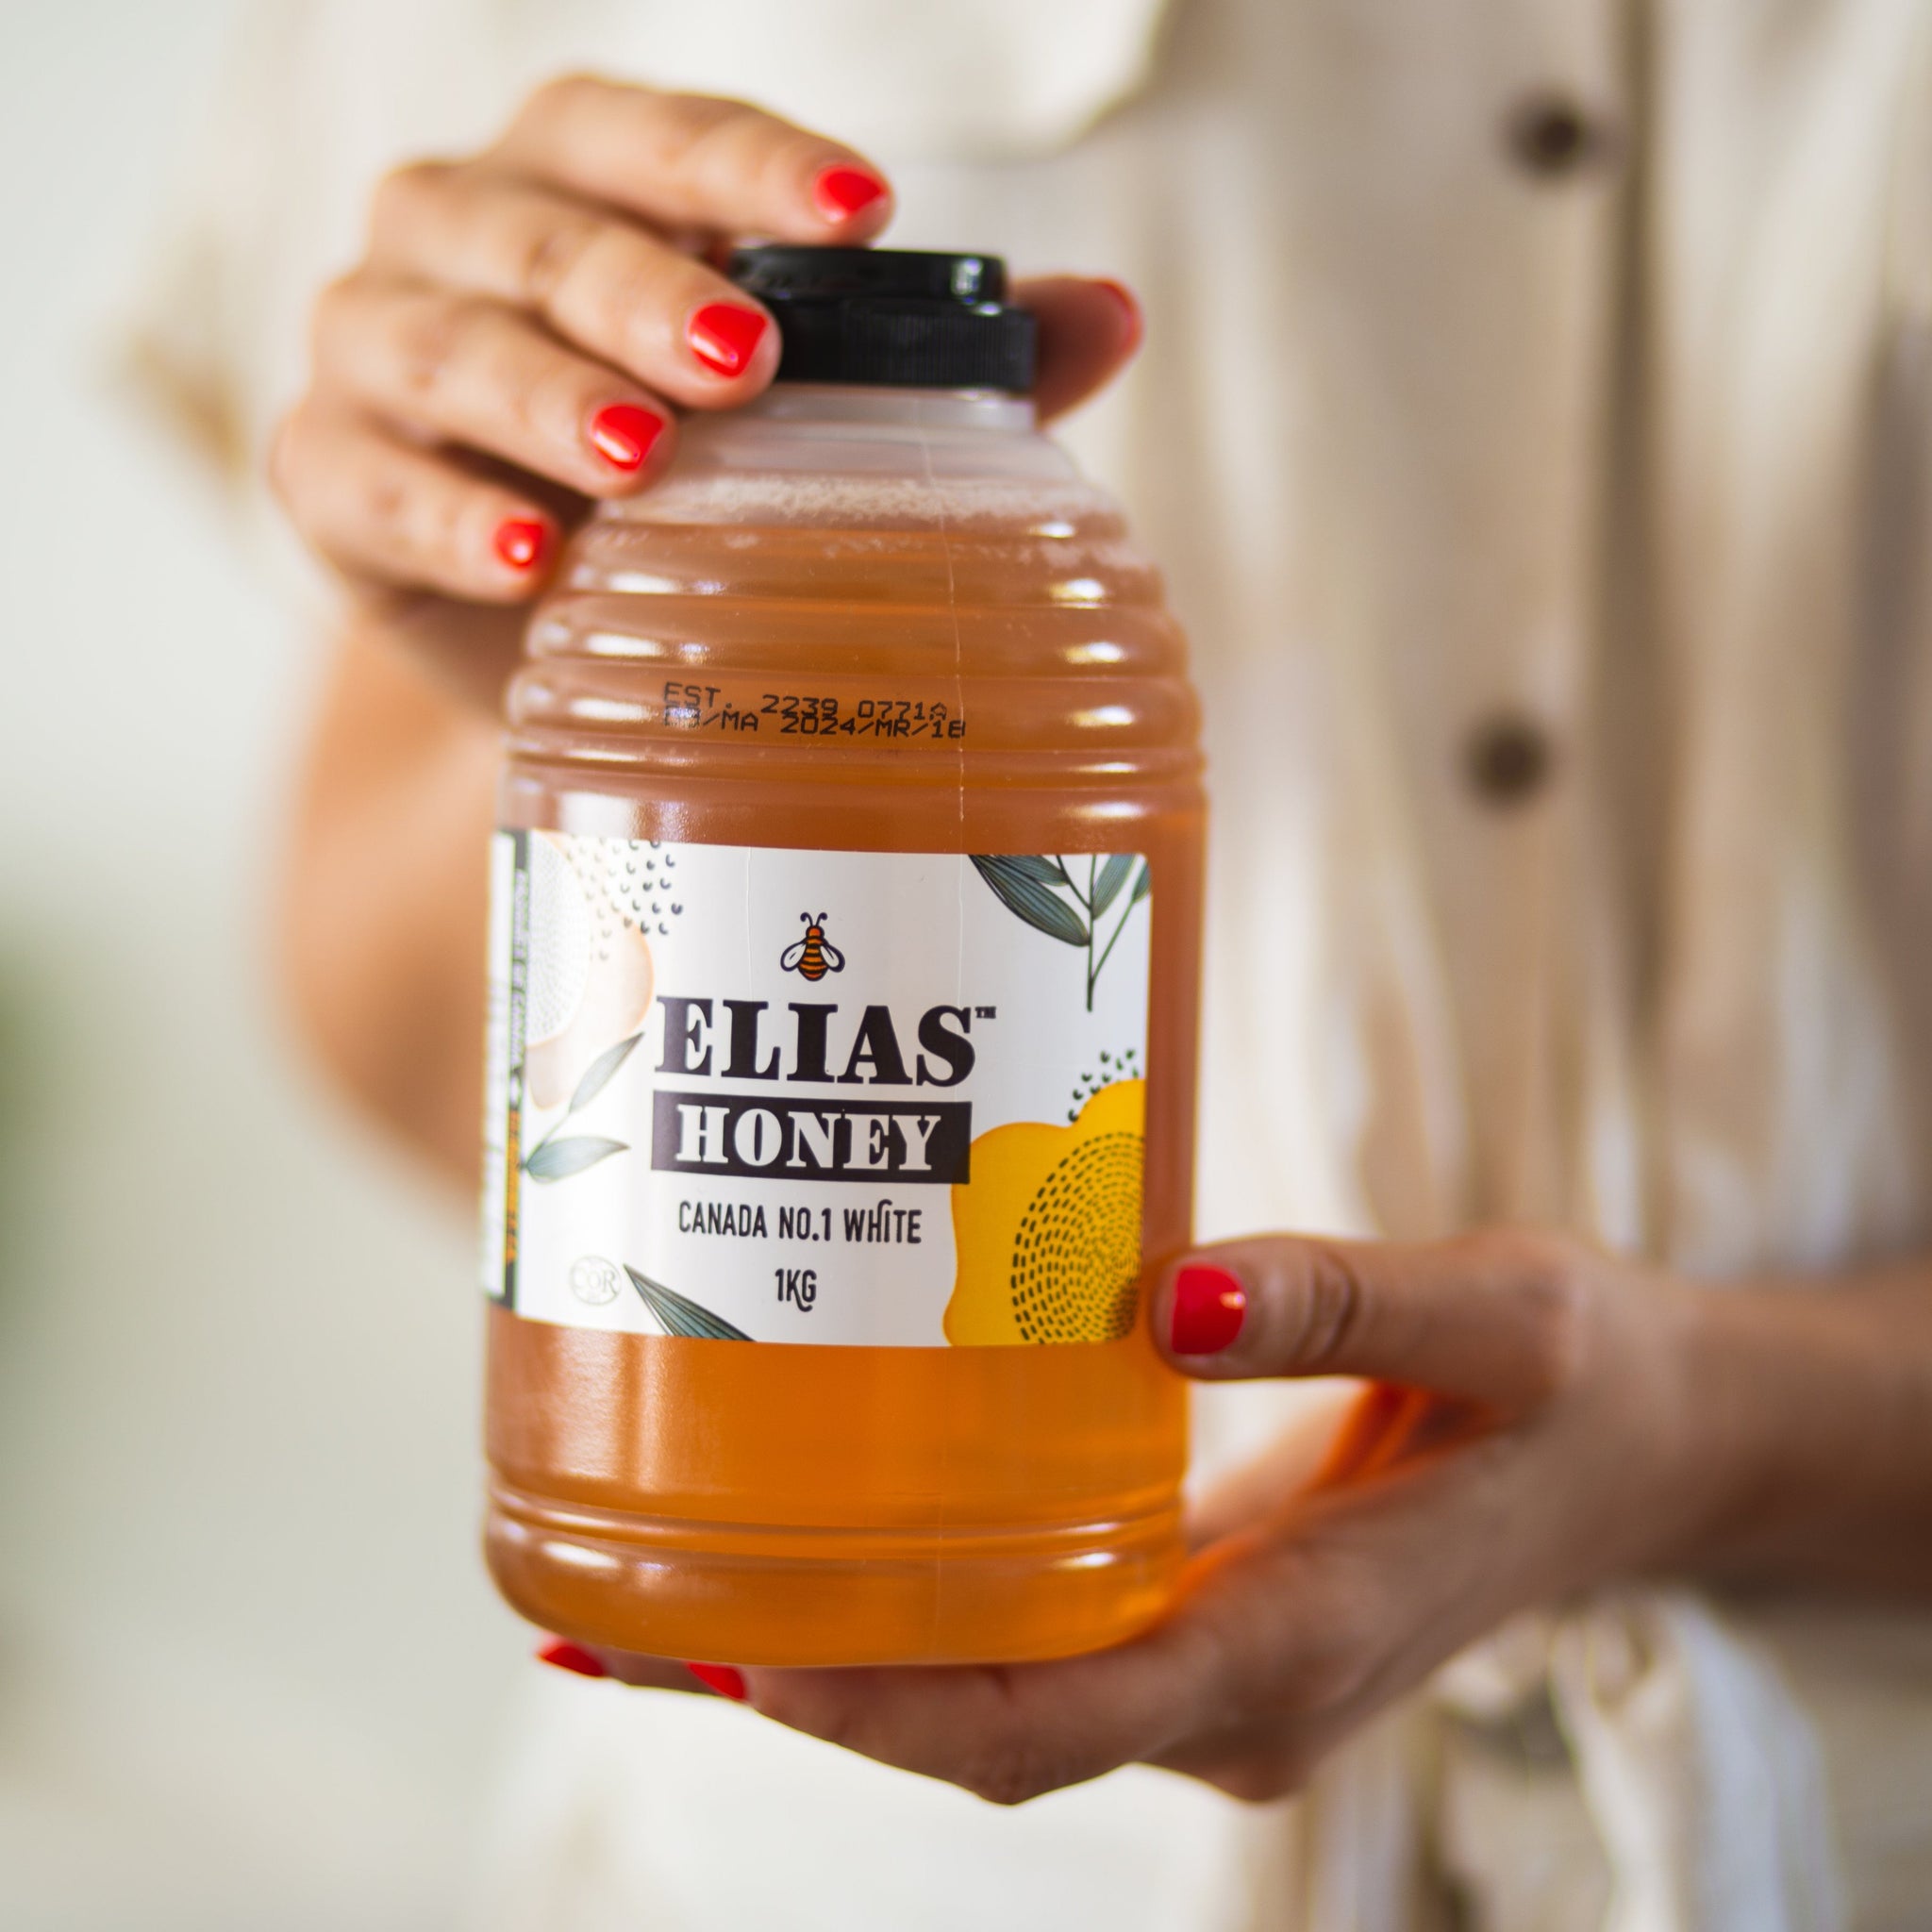 One Elias Honey 1KG Bottle hold